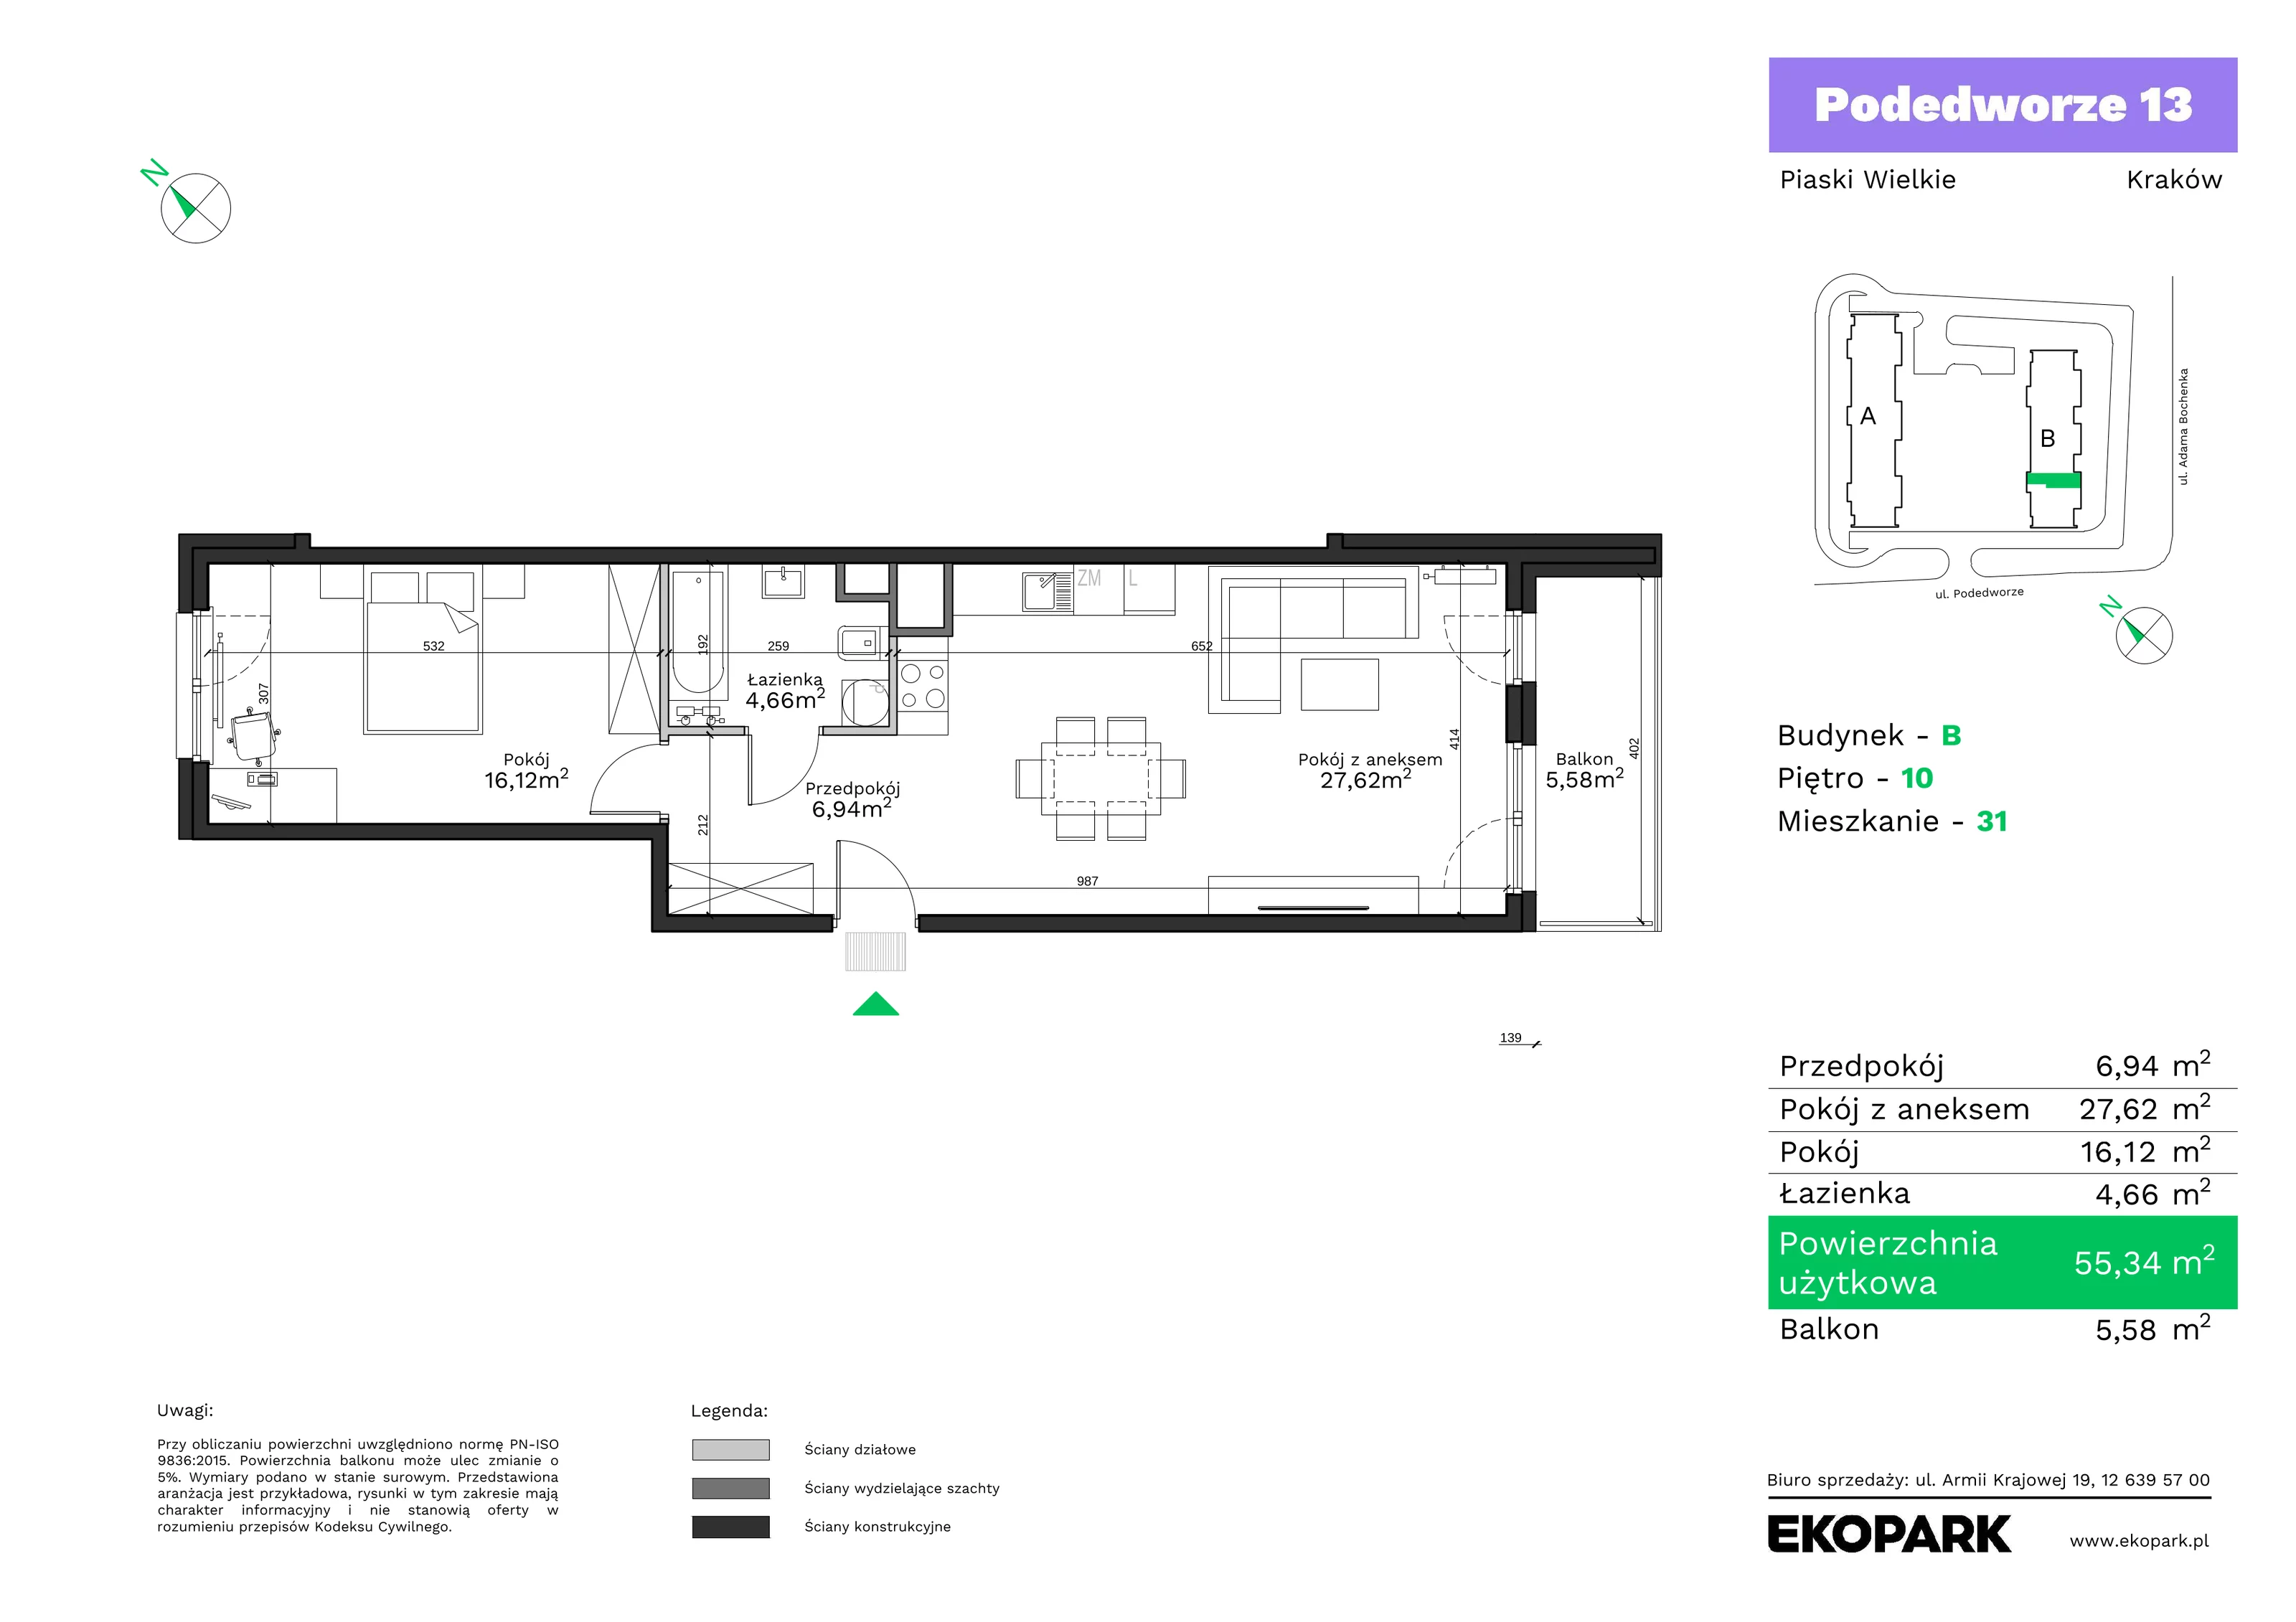 Mieszkanie 55,34 m², piętro 10, oferta nr B31, Podedworze 13, Kraków, Podgórze Duchackie, Piaski Wielkie, ul. Podedworze 13